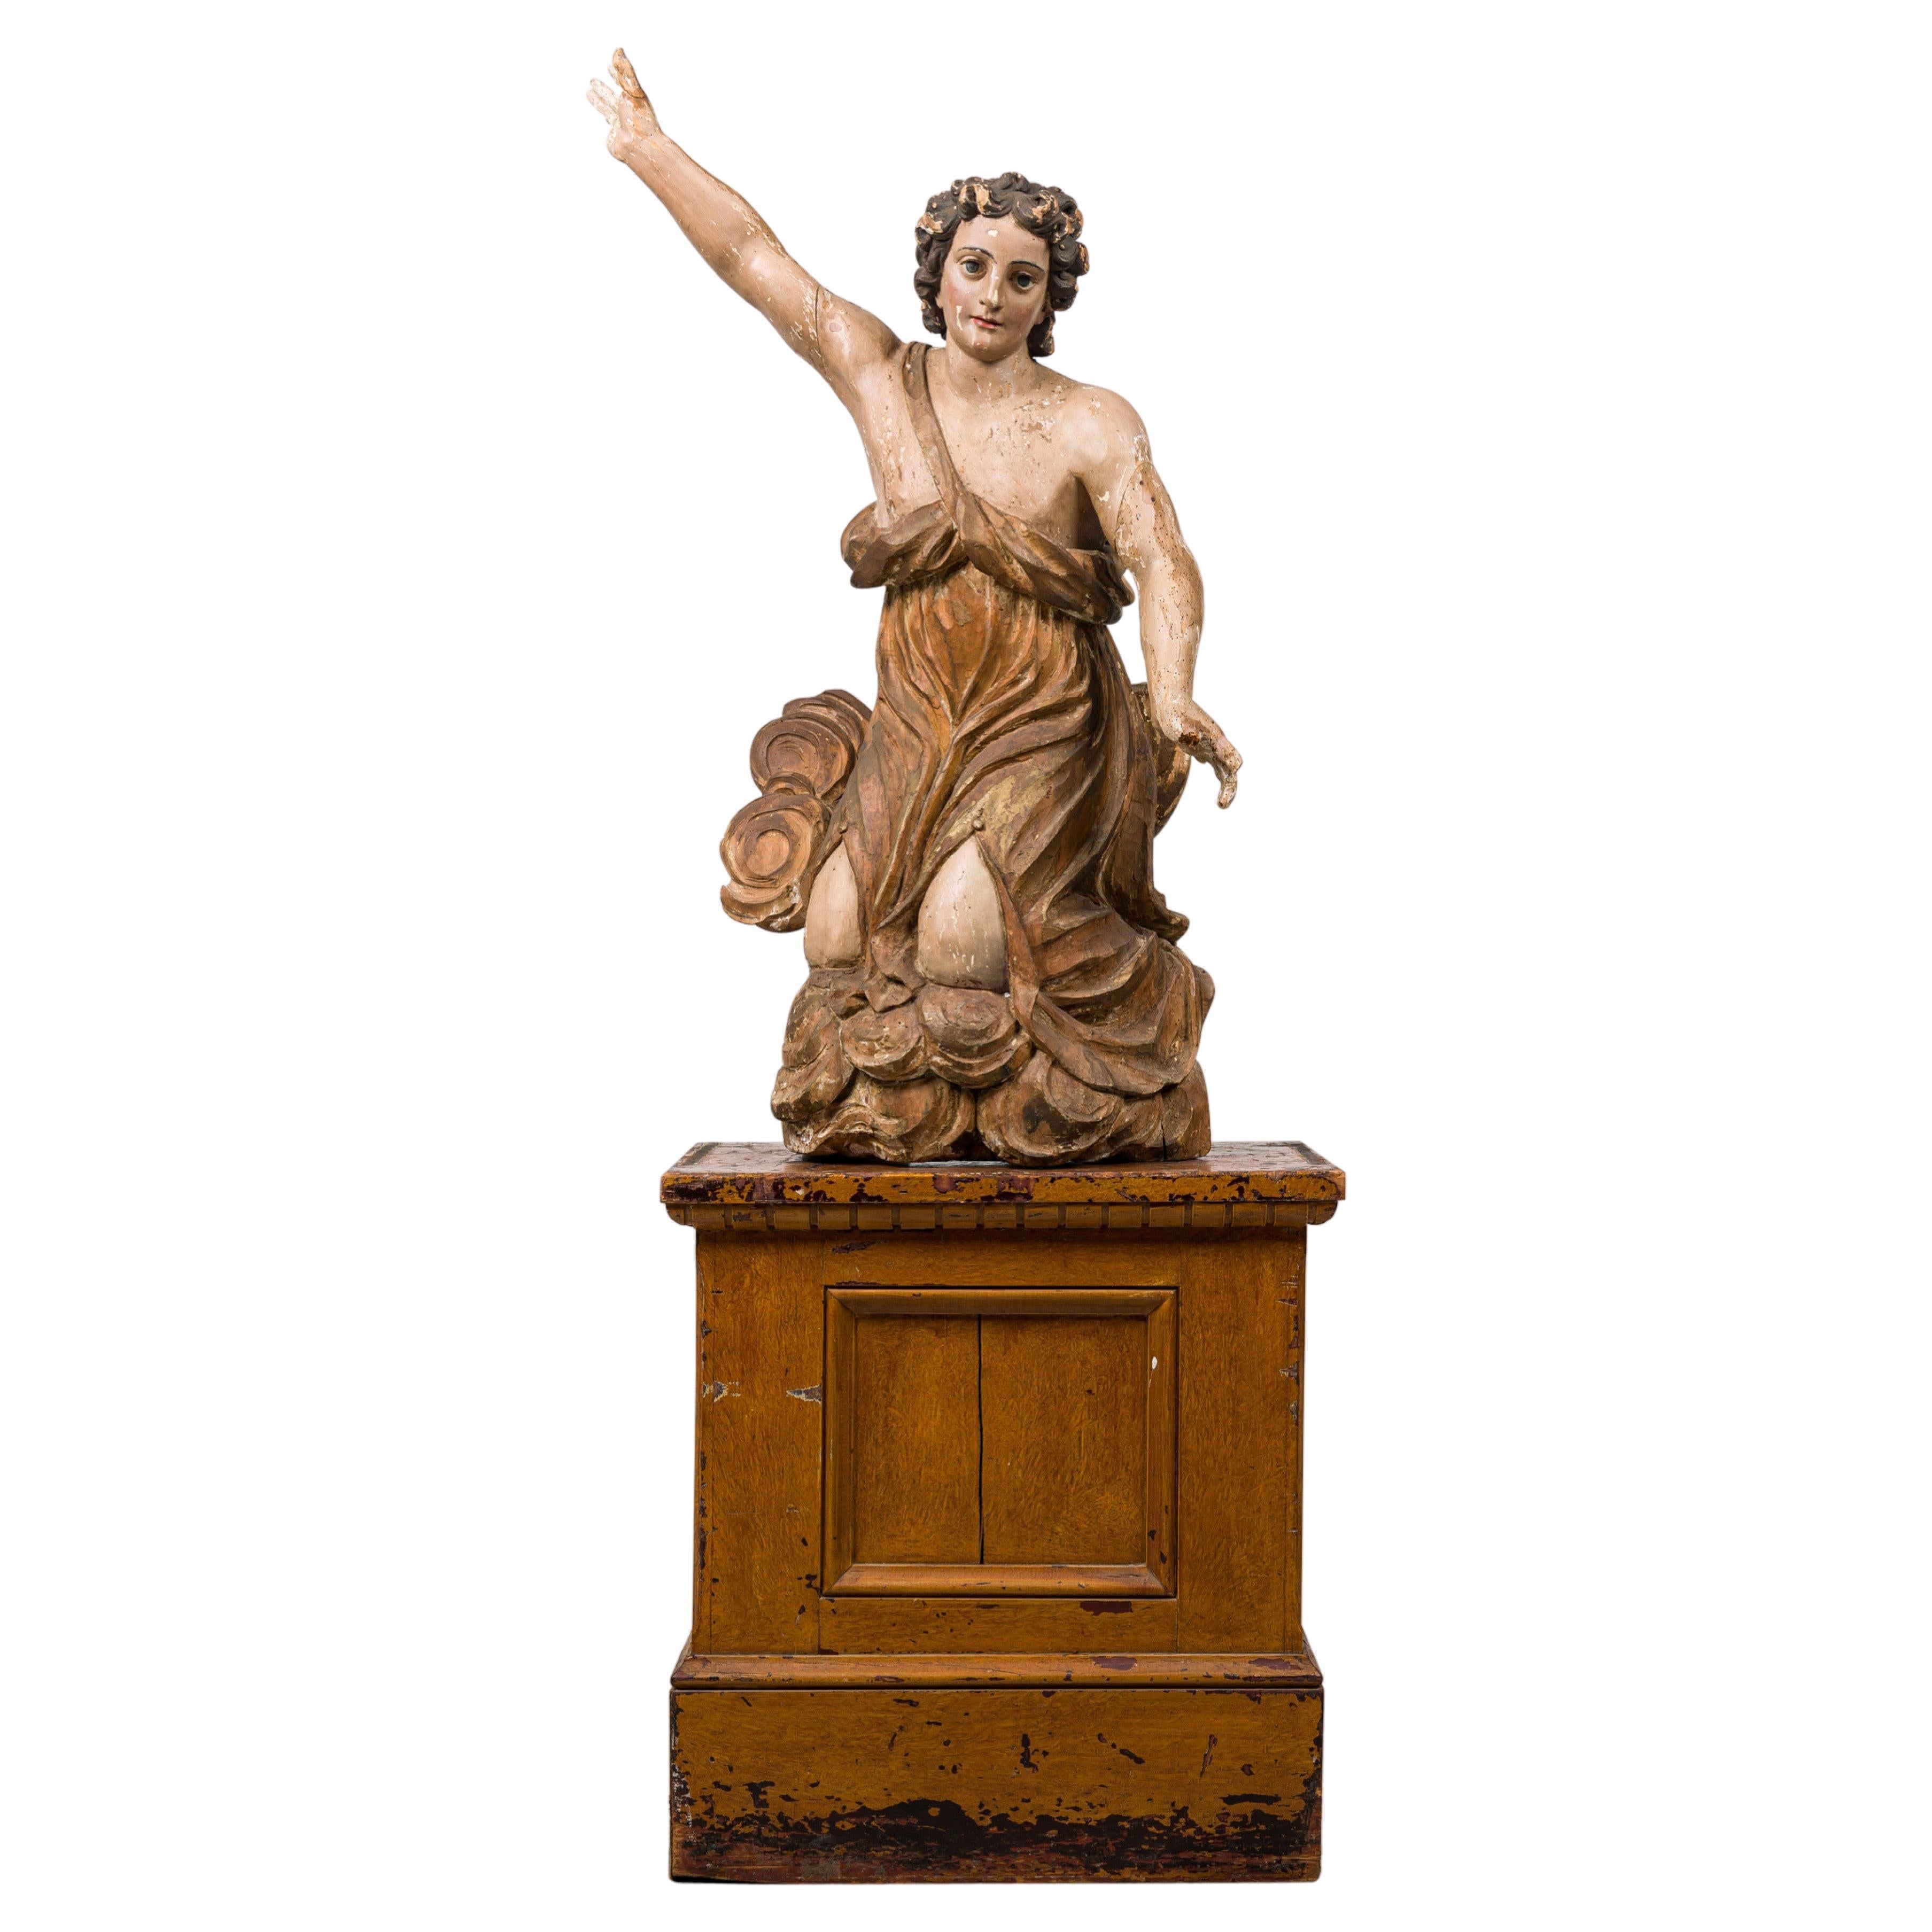 Ange monumental de la Renaissance italienne en bois doré peint de façon baroque sur Stand en vente